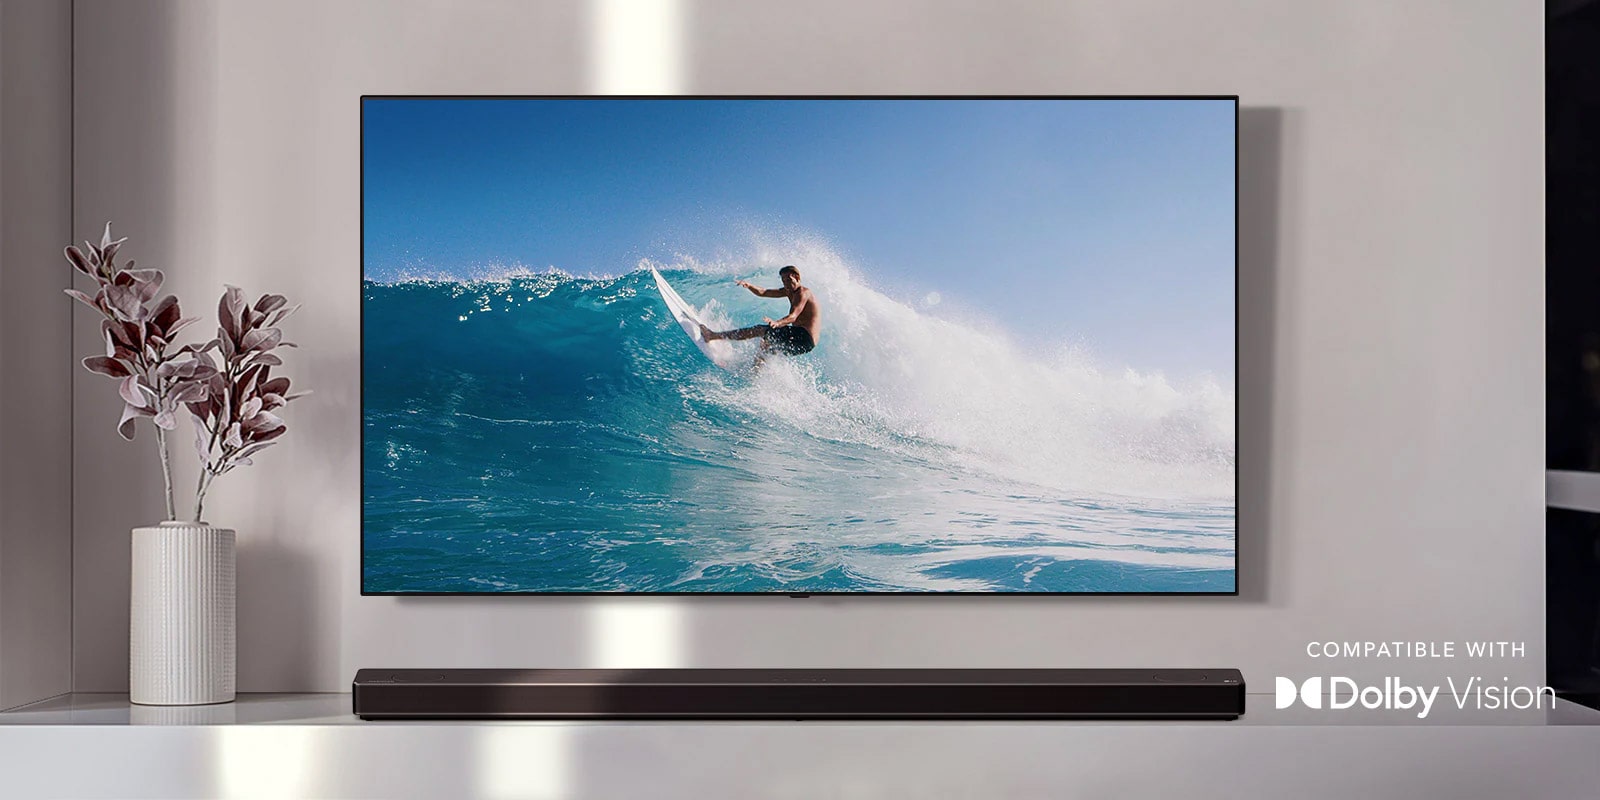 TV treo trên tường. Tv thể hiện một người đàn ông đang lướt trên con sóng lớn. LG Soundbar nằm ngay bên dưới TV trên kệ trắng. Một chiếc bình với một bông hoa ngay bên cạnh loa soundbar. (phát video)